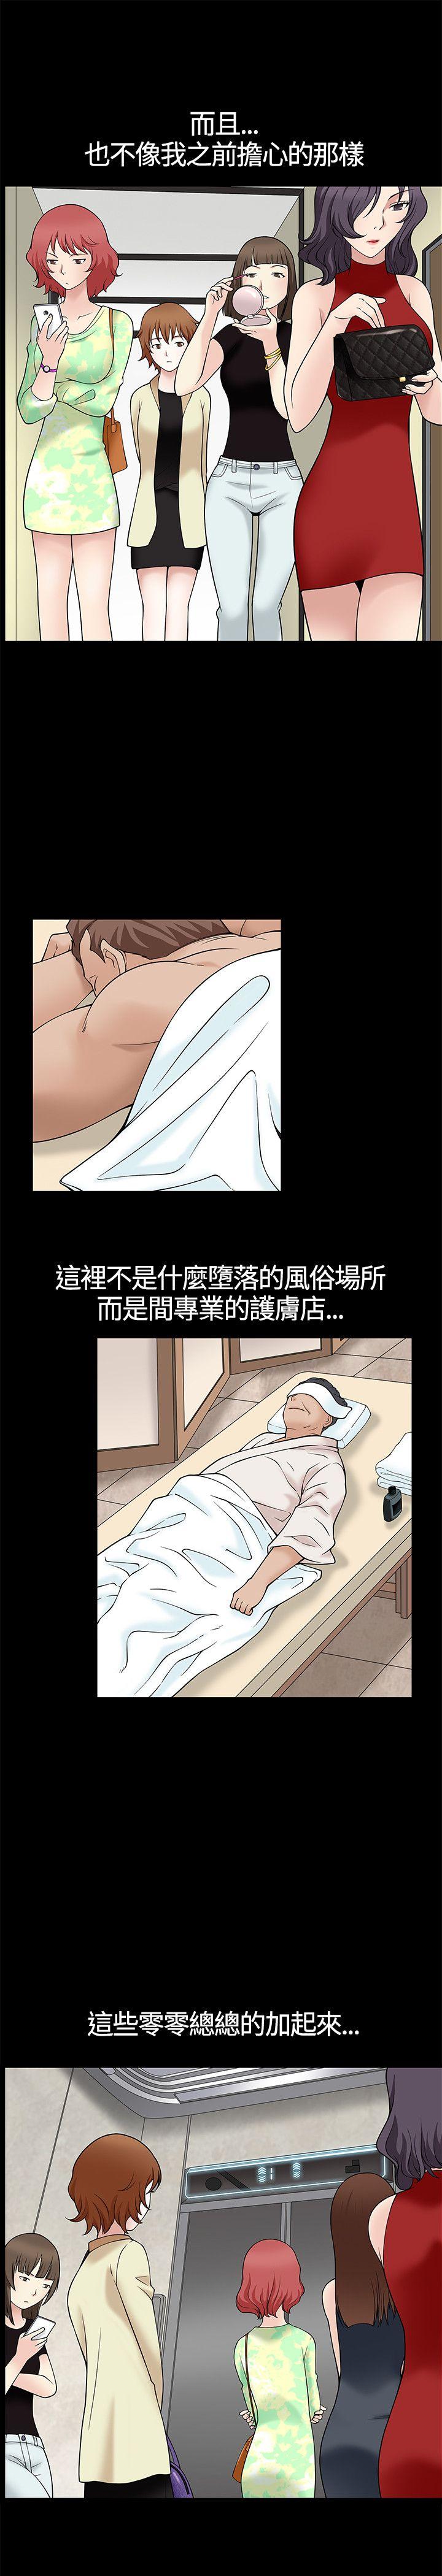 韩国污漫画 人妻性解放3:粗糙的手 第8话 31